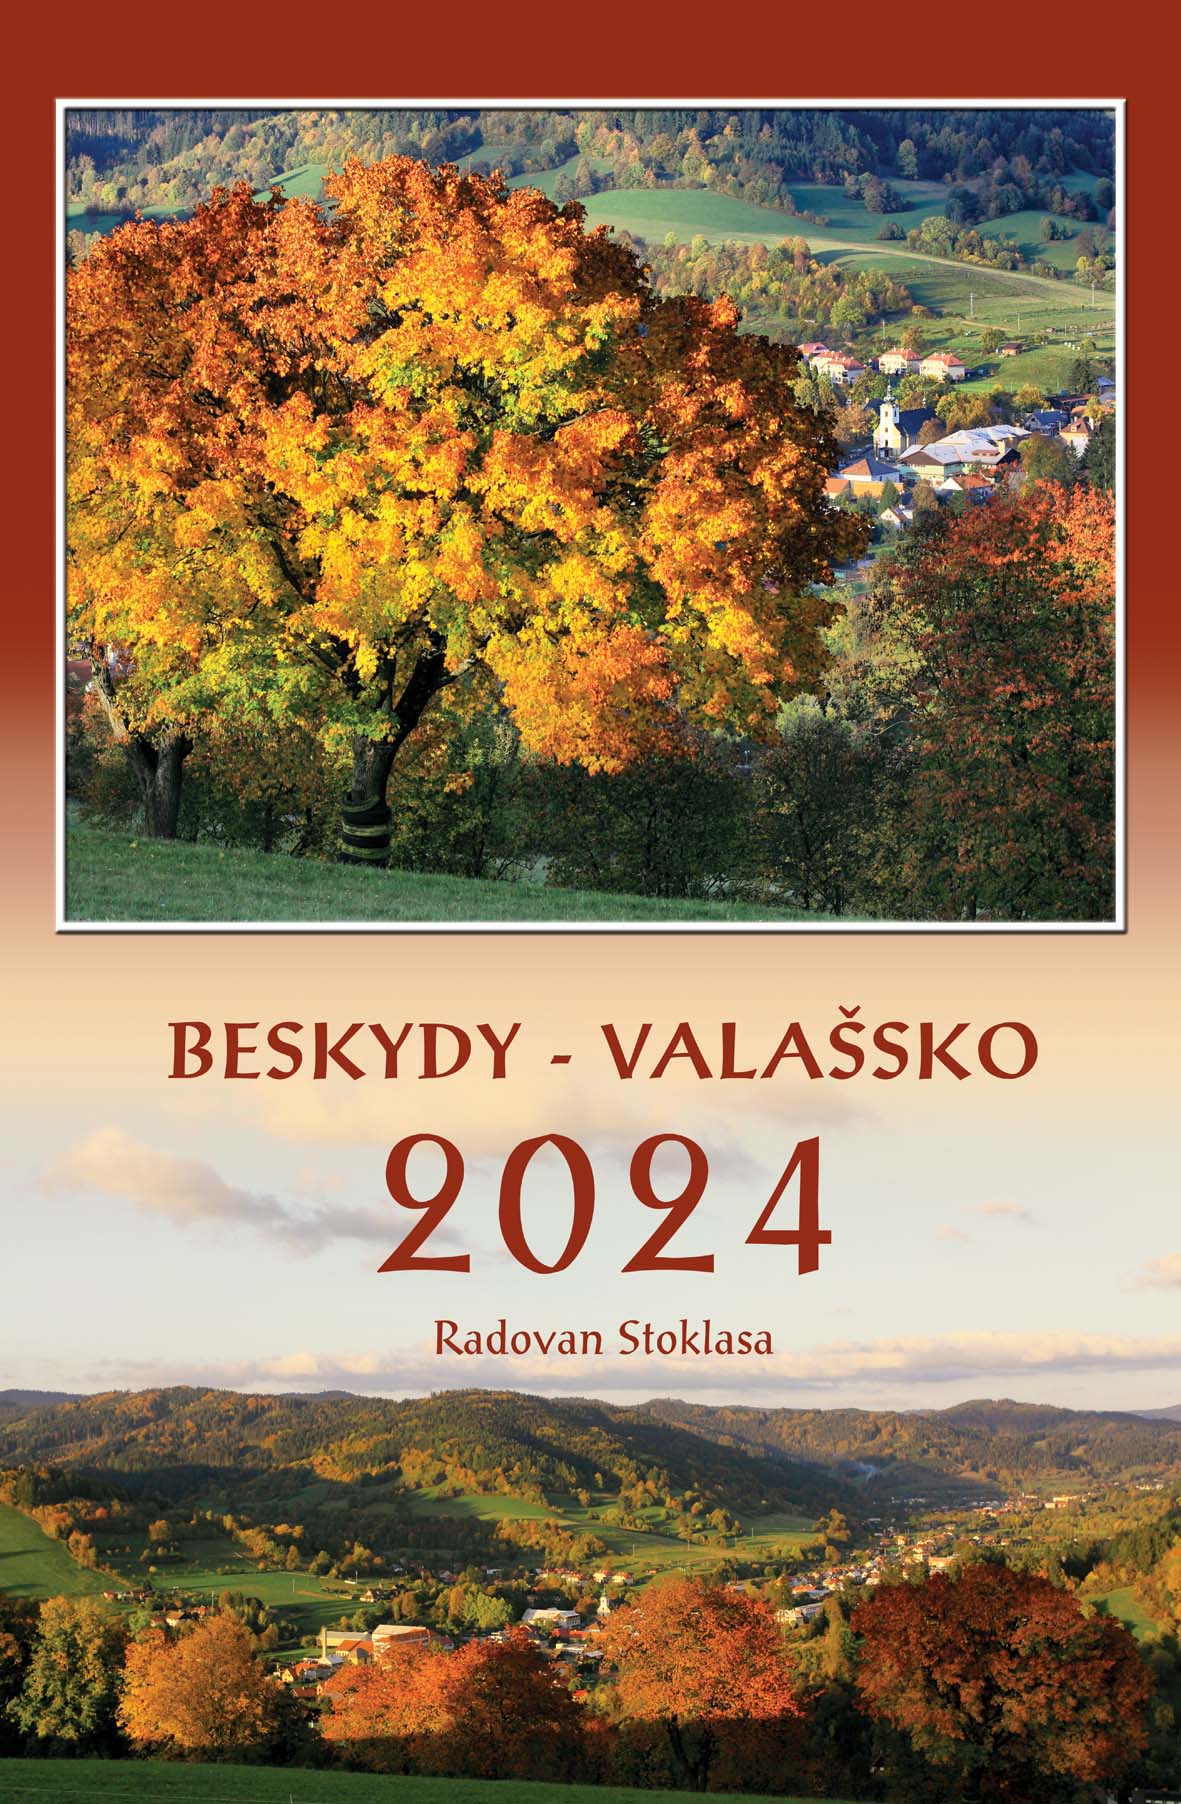 Beskydy - Valašsko